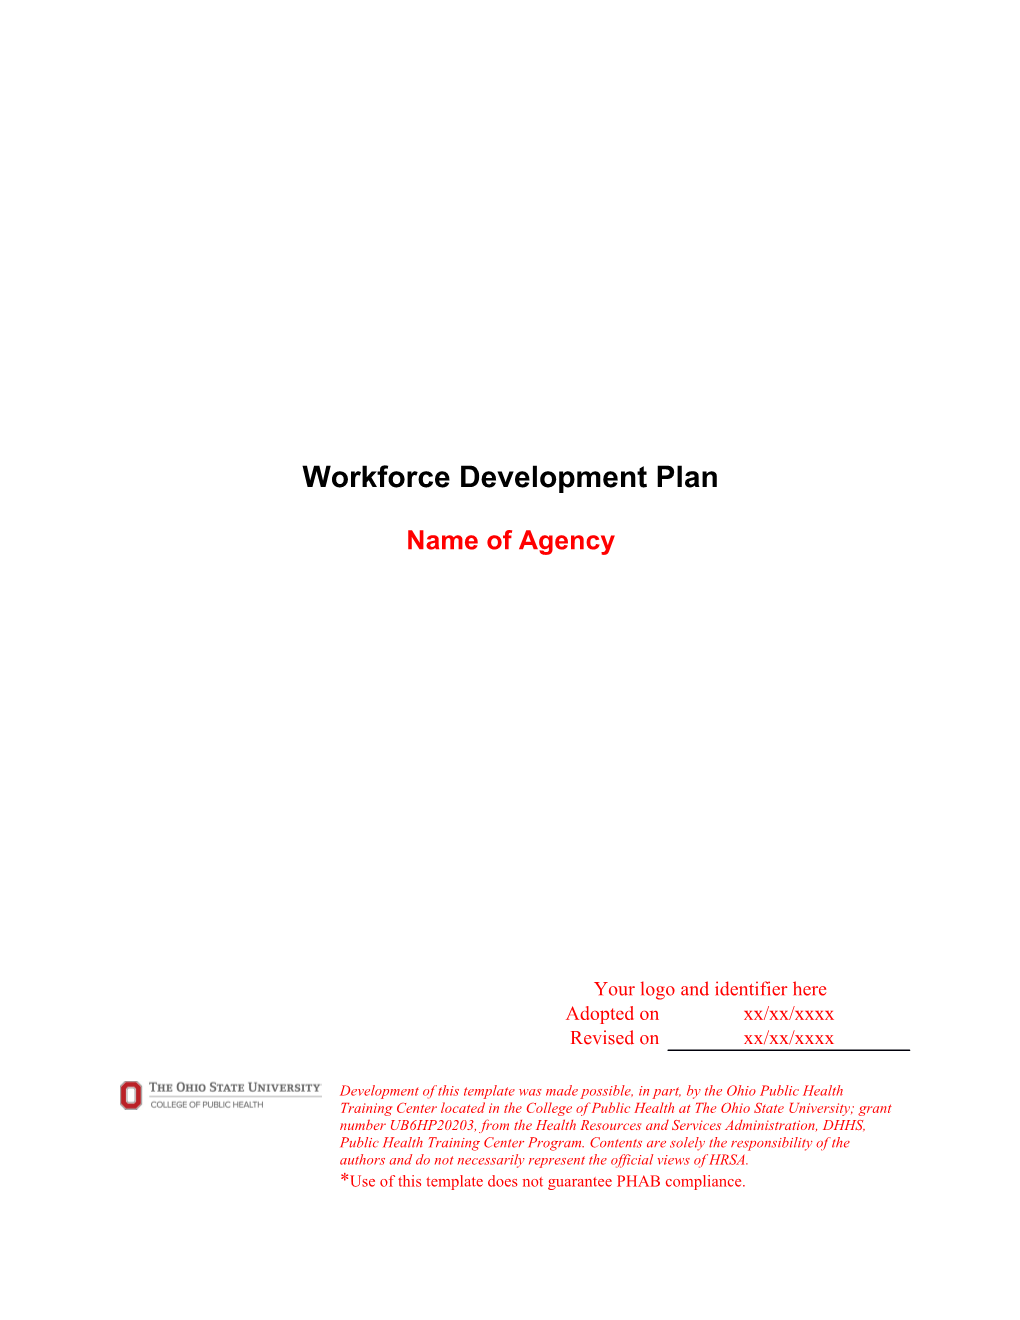 Plan for Workforce Training